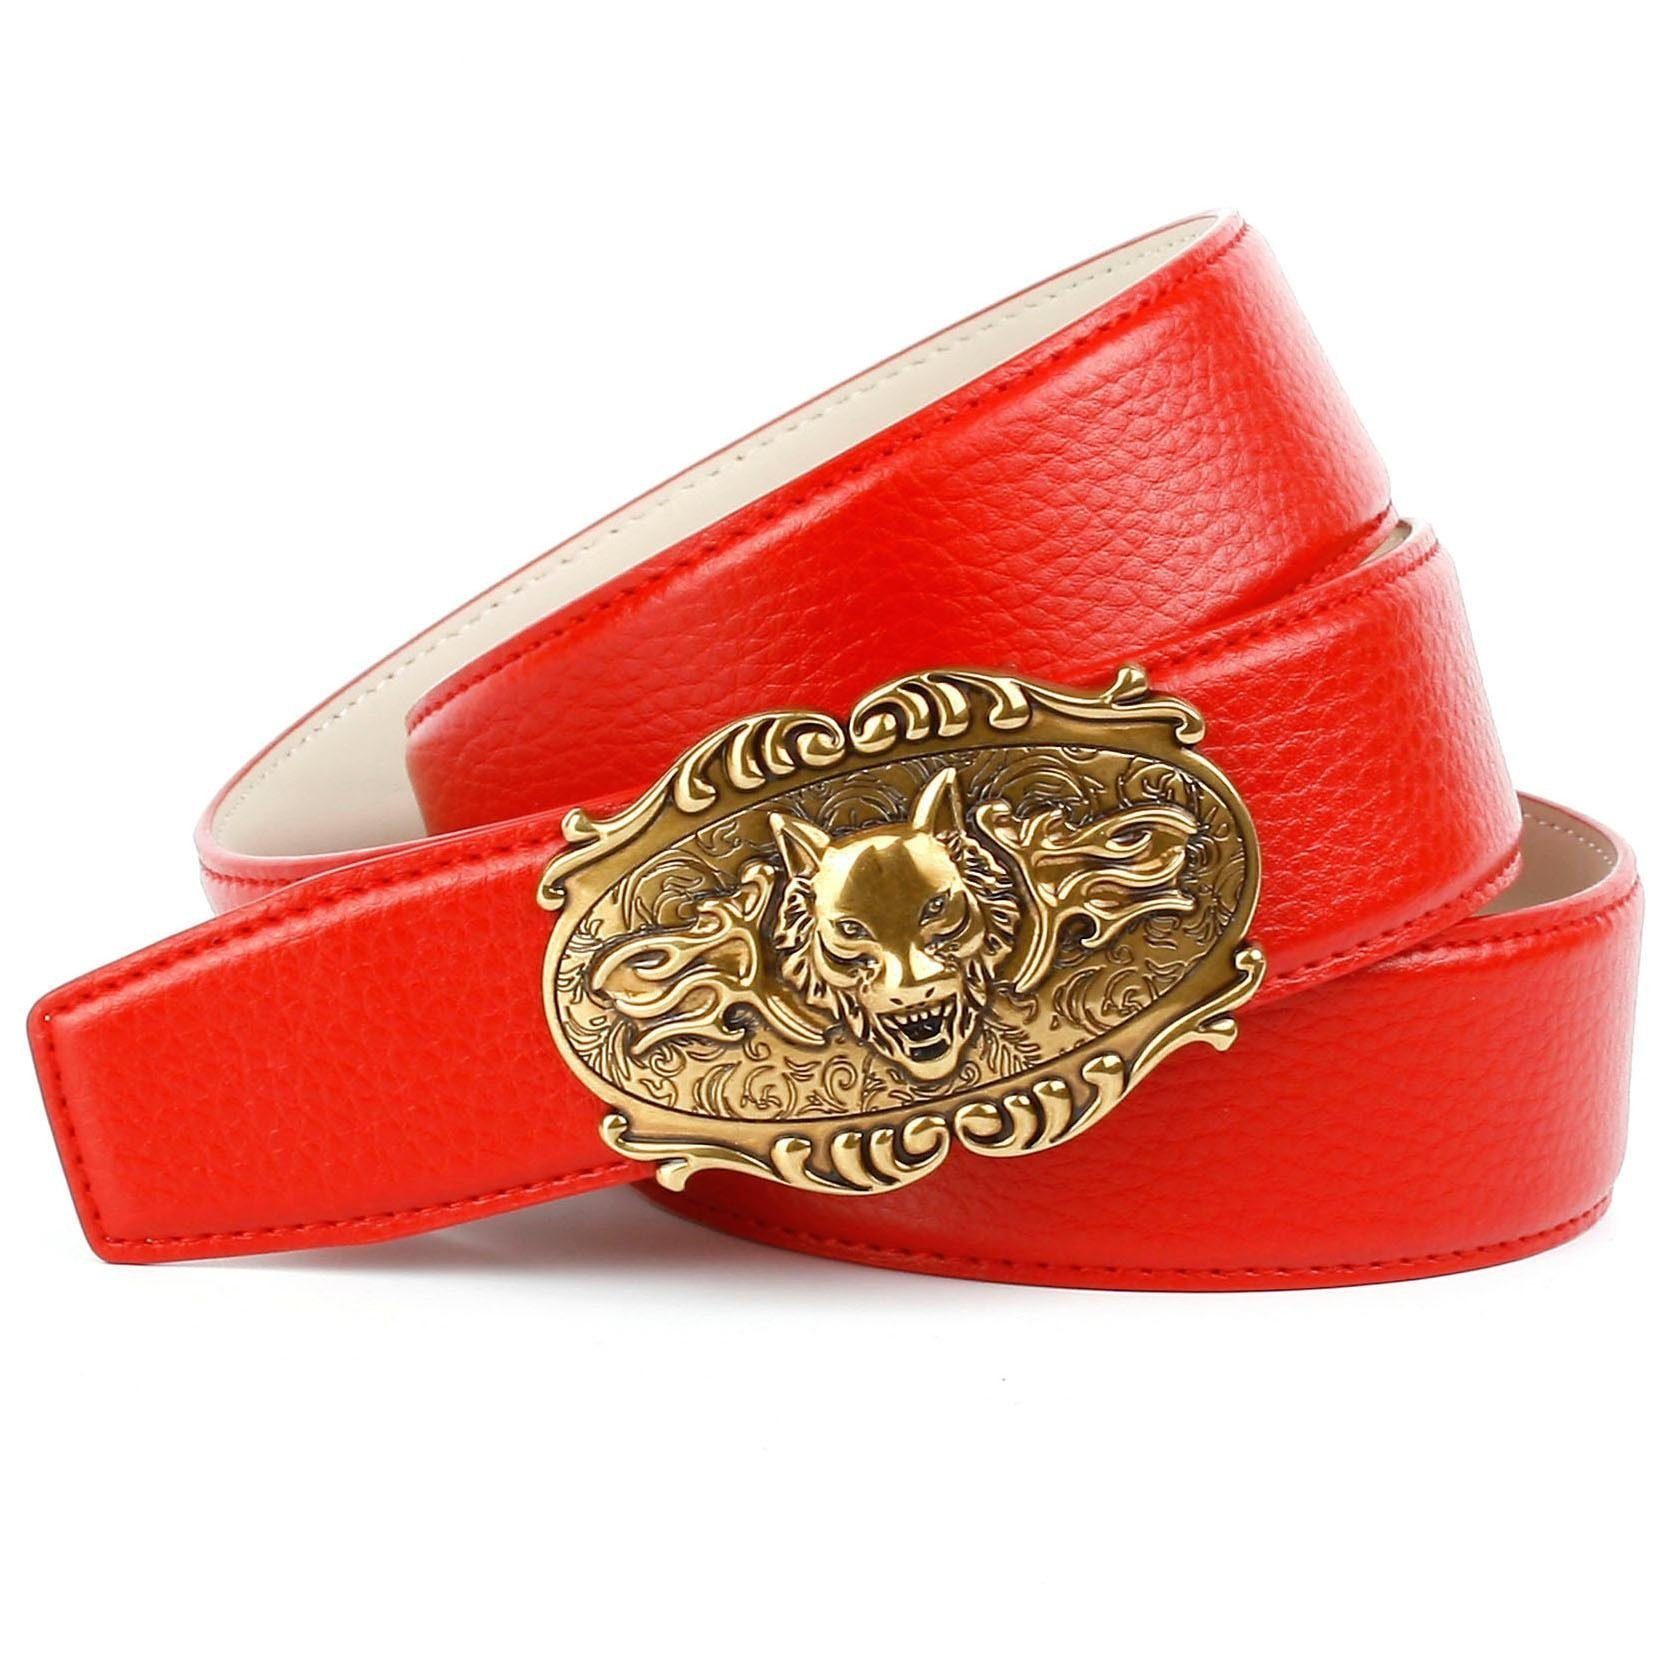 Anthoni Crown Ledergürtel in rot mit Wolfkopf-Schnalle | Anzuggürtel